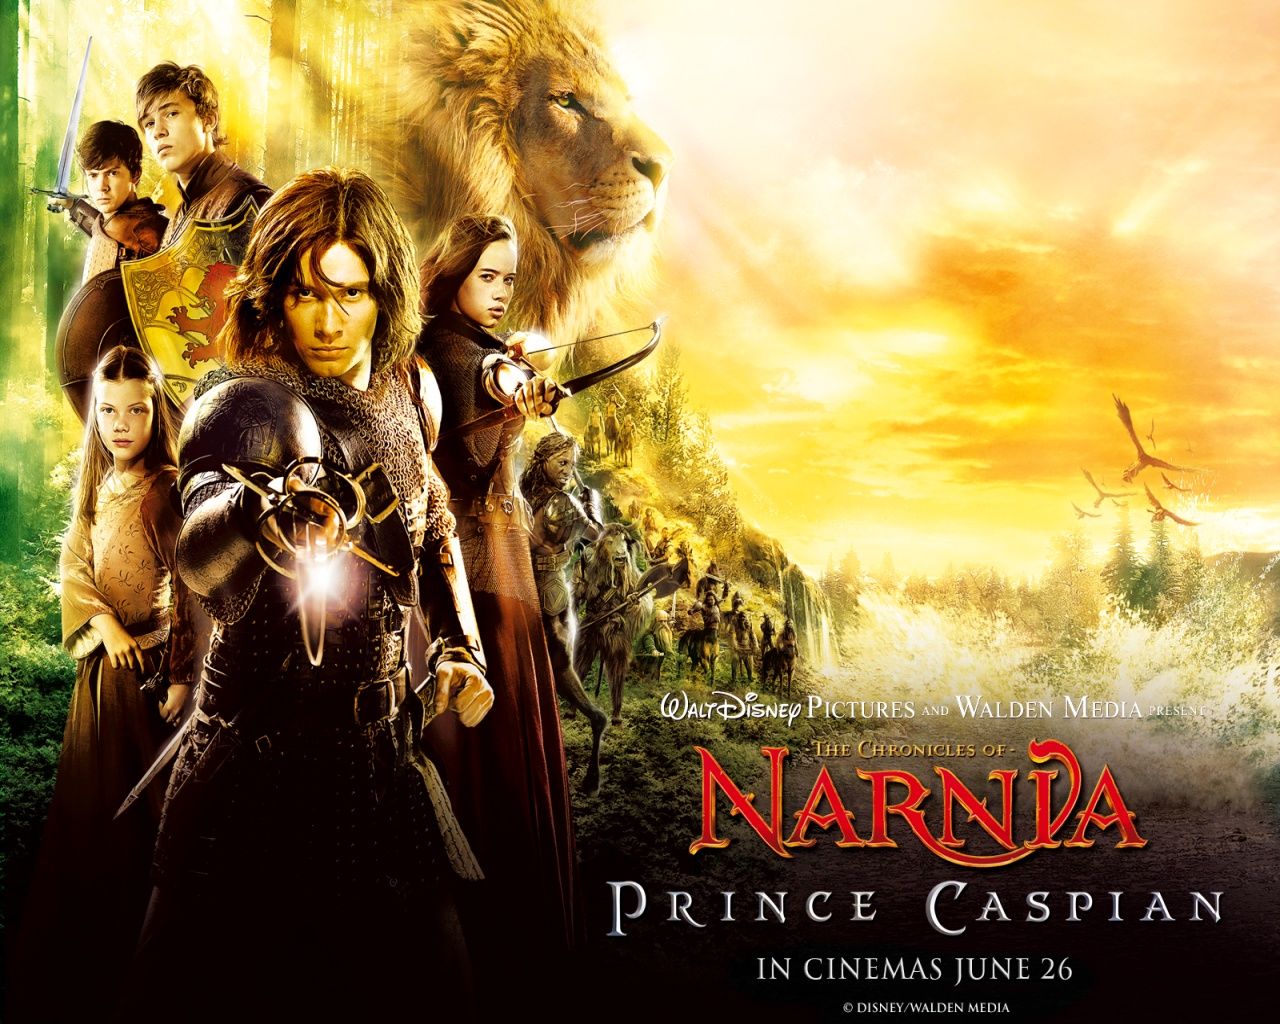 Prince Caspian Wallpaper Chronicles of Narnia Prince Caspian. Chronicles of narnia, Narnia, Narnia prince caspian